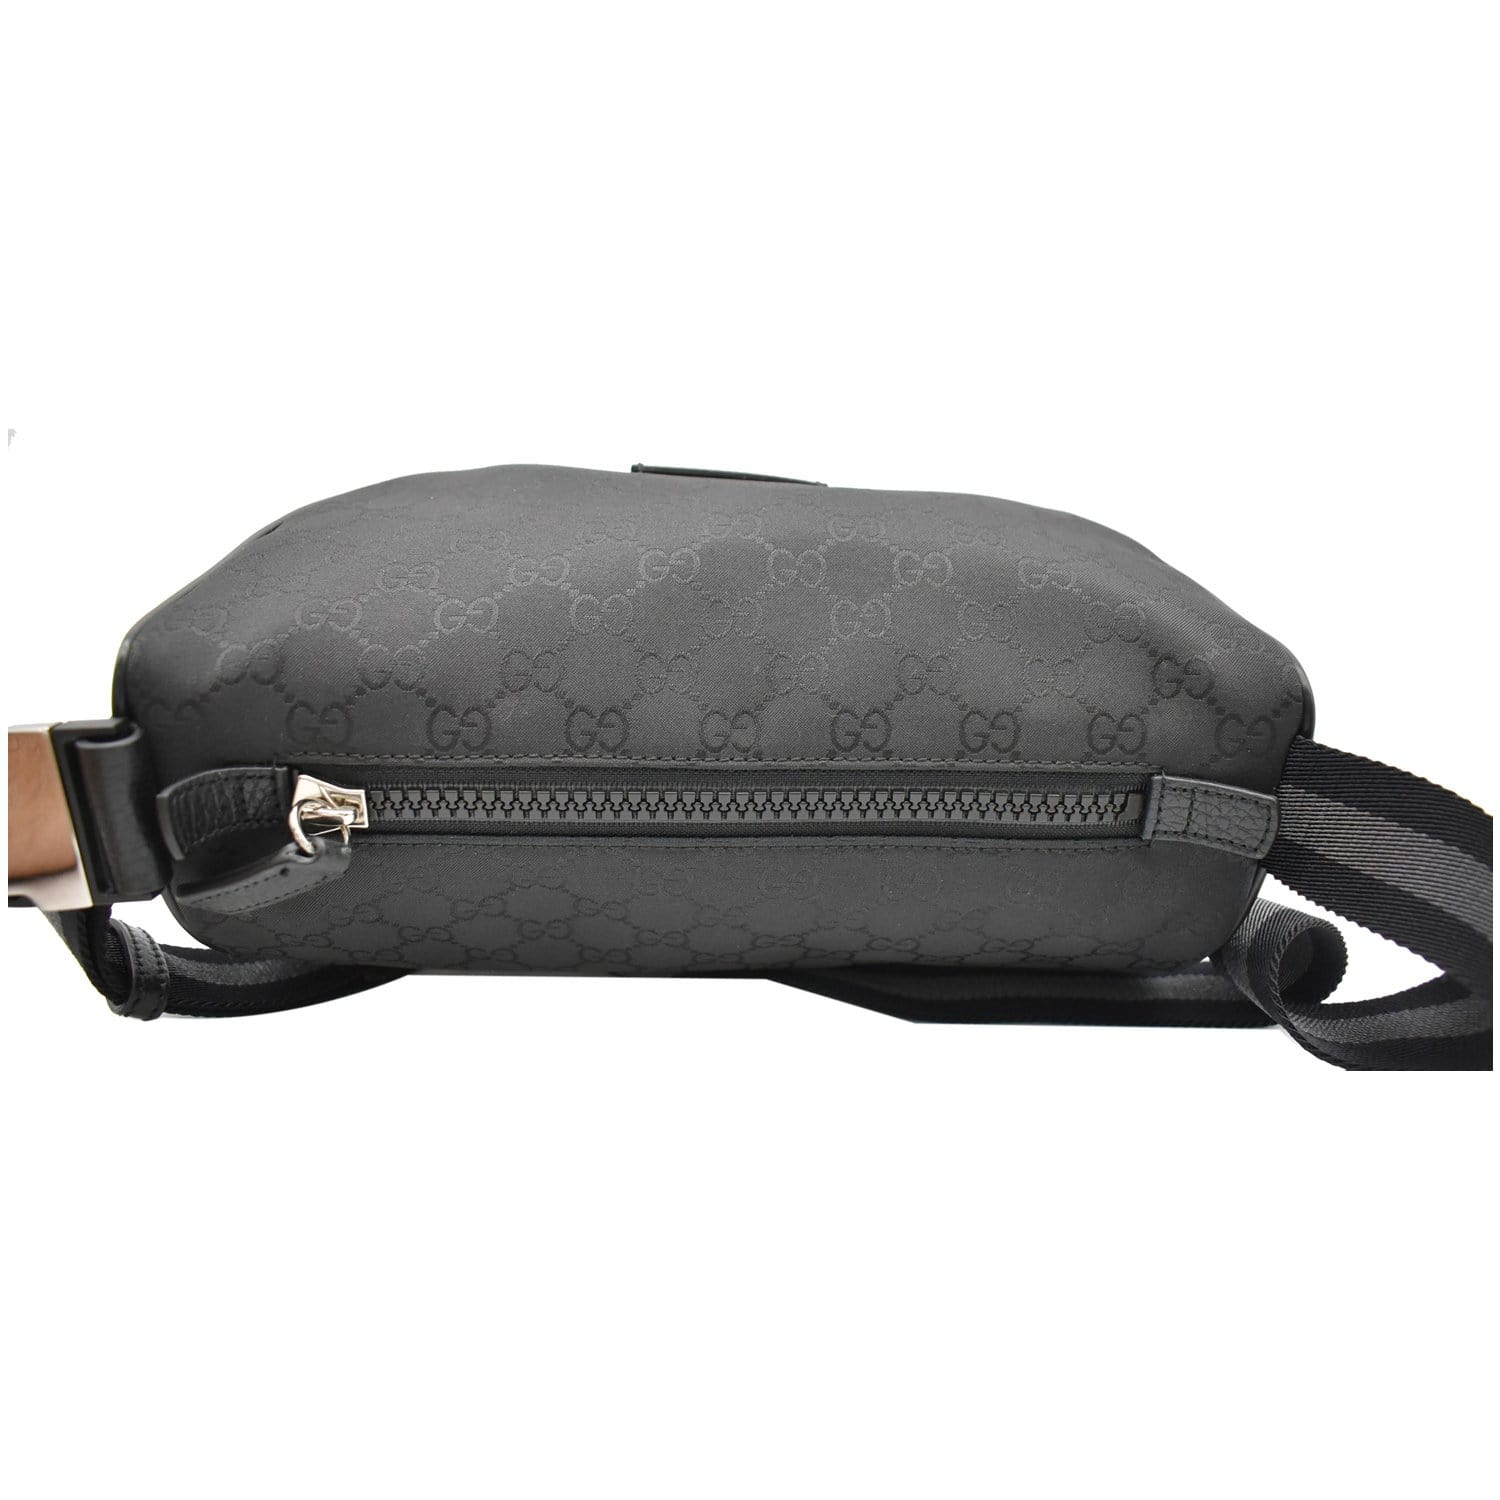 GG Supreme Belt Bag in Black - Gucci